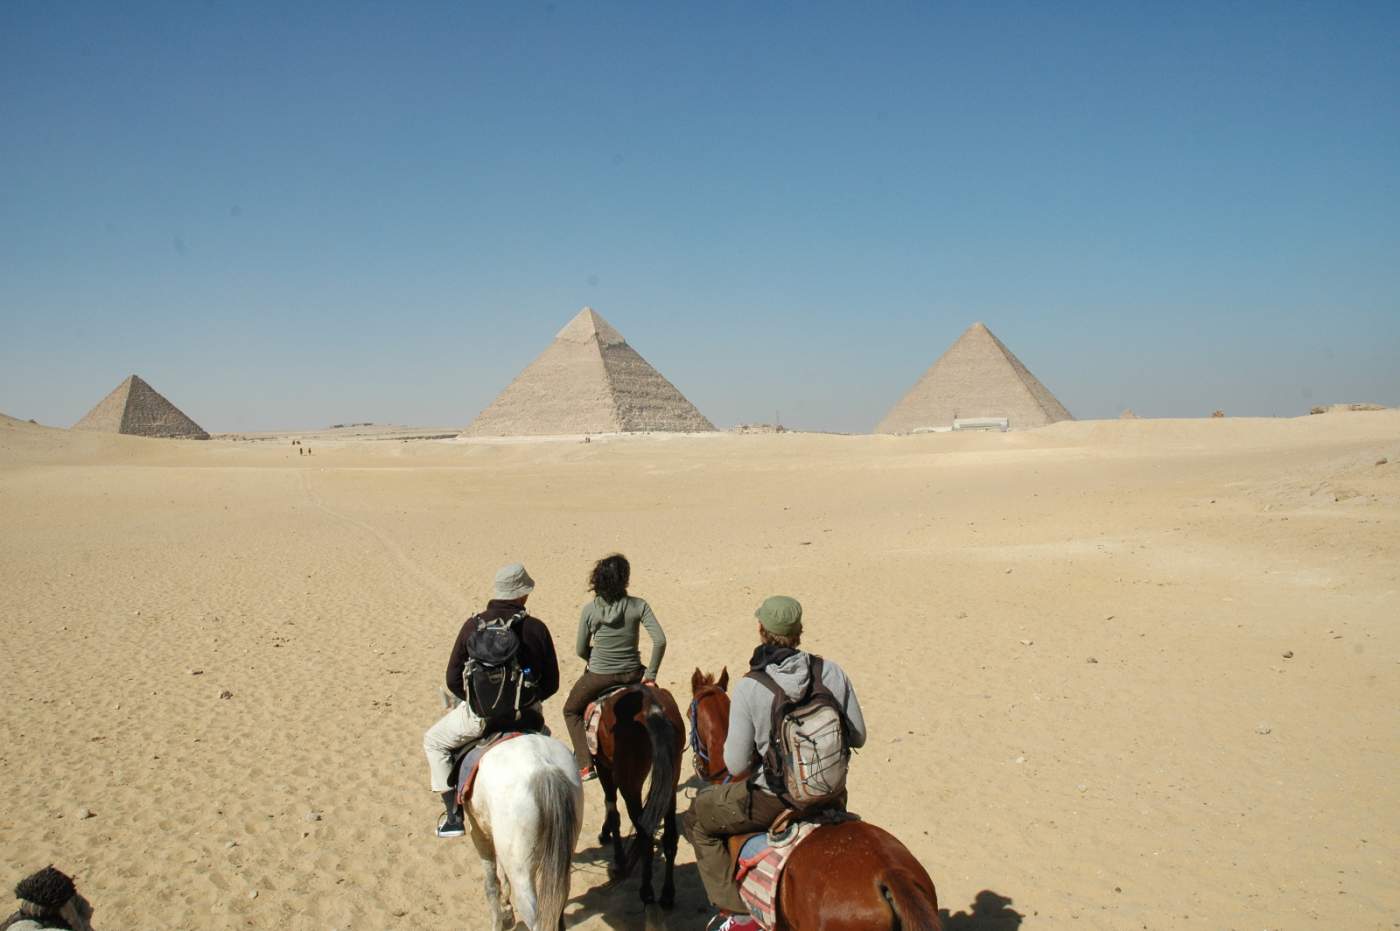 Um die Pyramiden zu besichtigen wechseln wir vom Motorrad zum Pferd